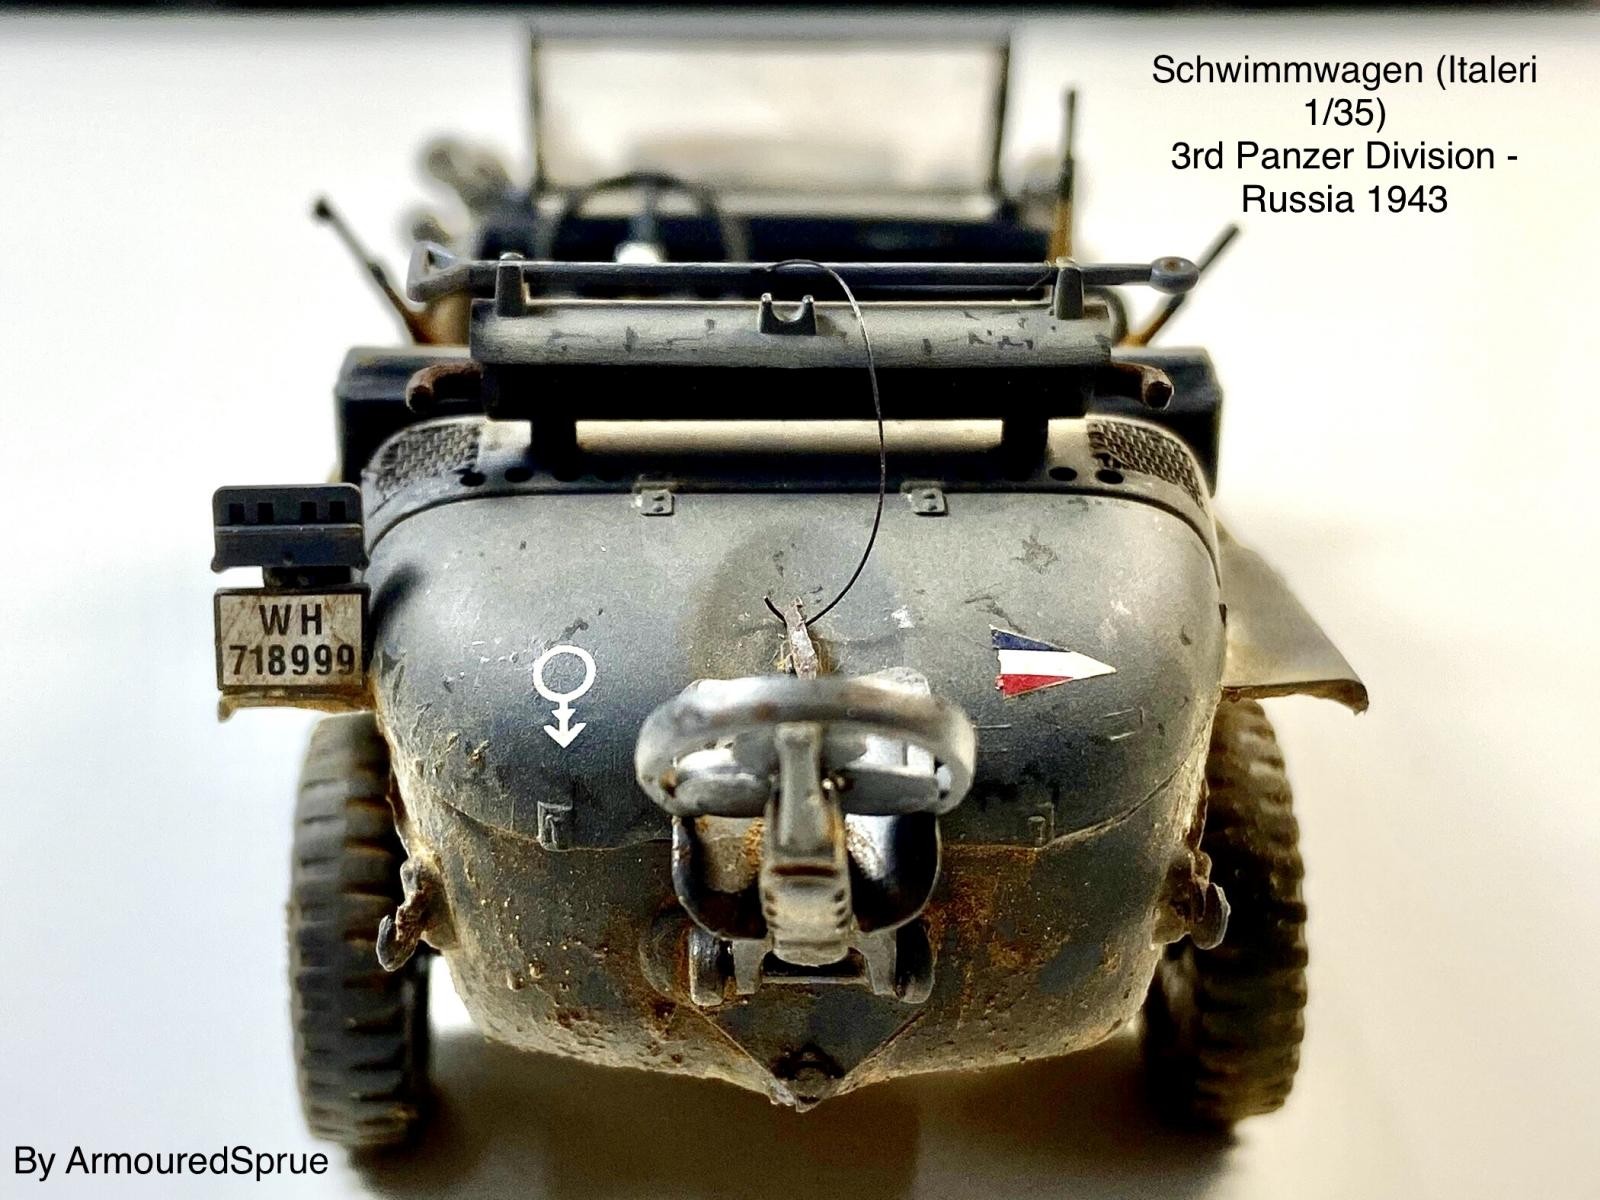 Schwimmwagen (Italeri 1/35) - ArmouredSprue - iModeler